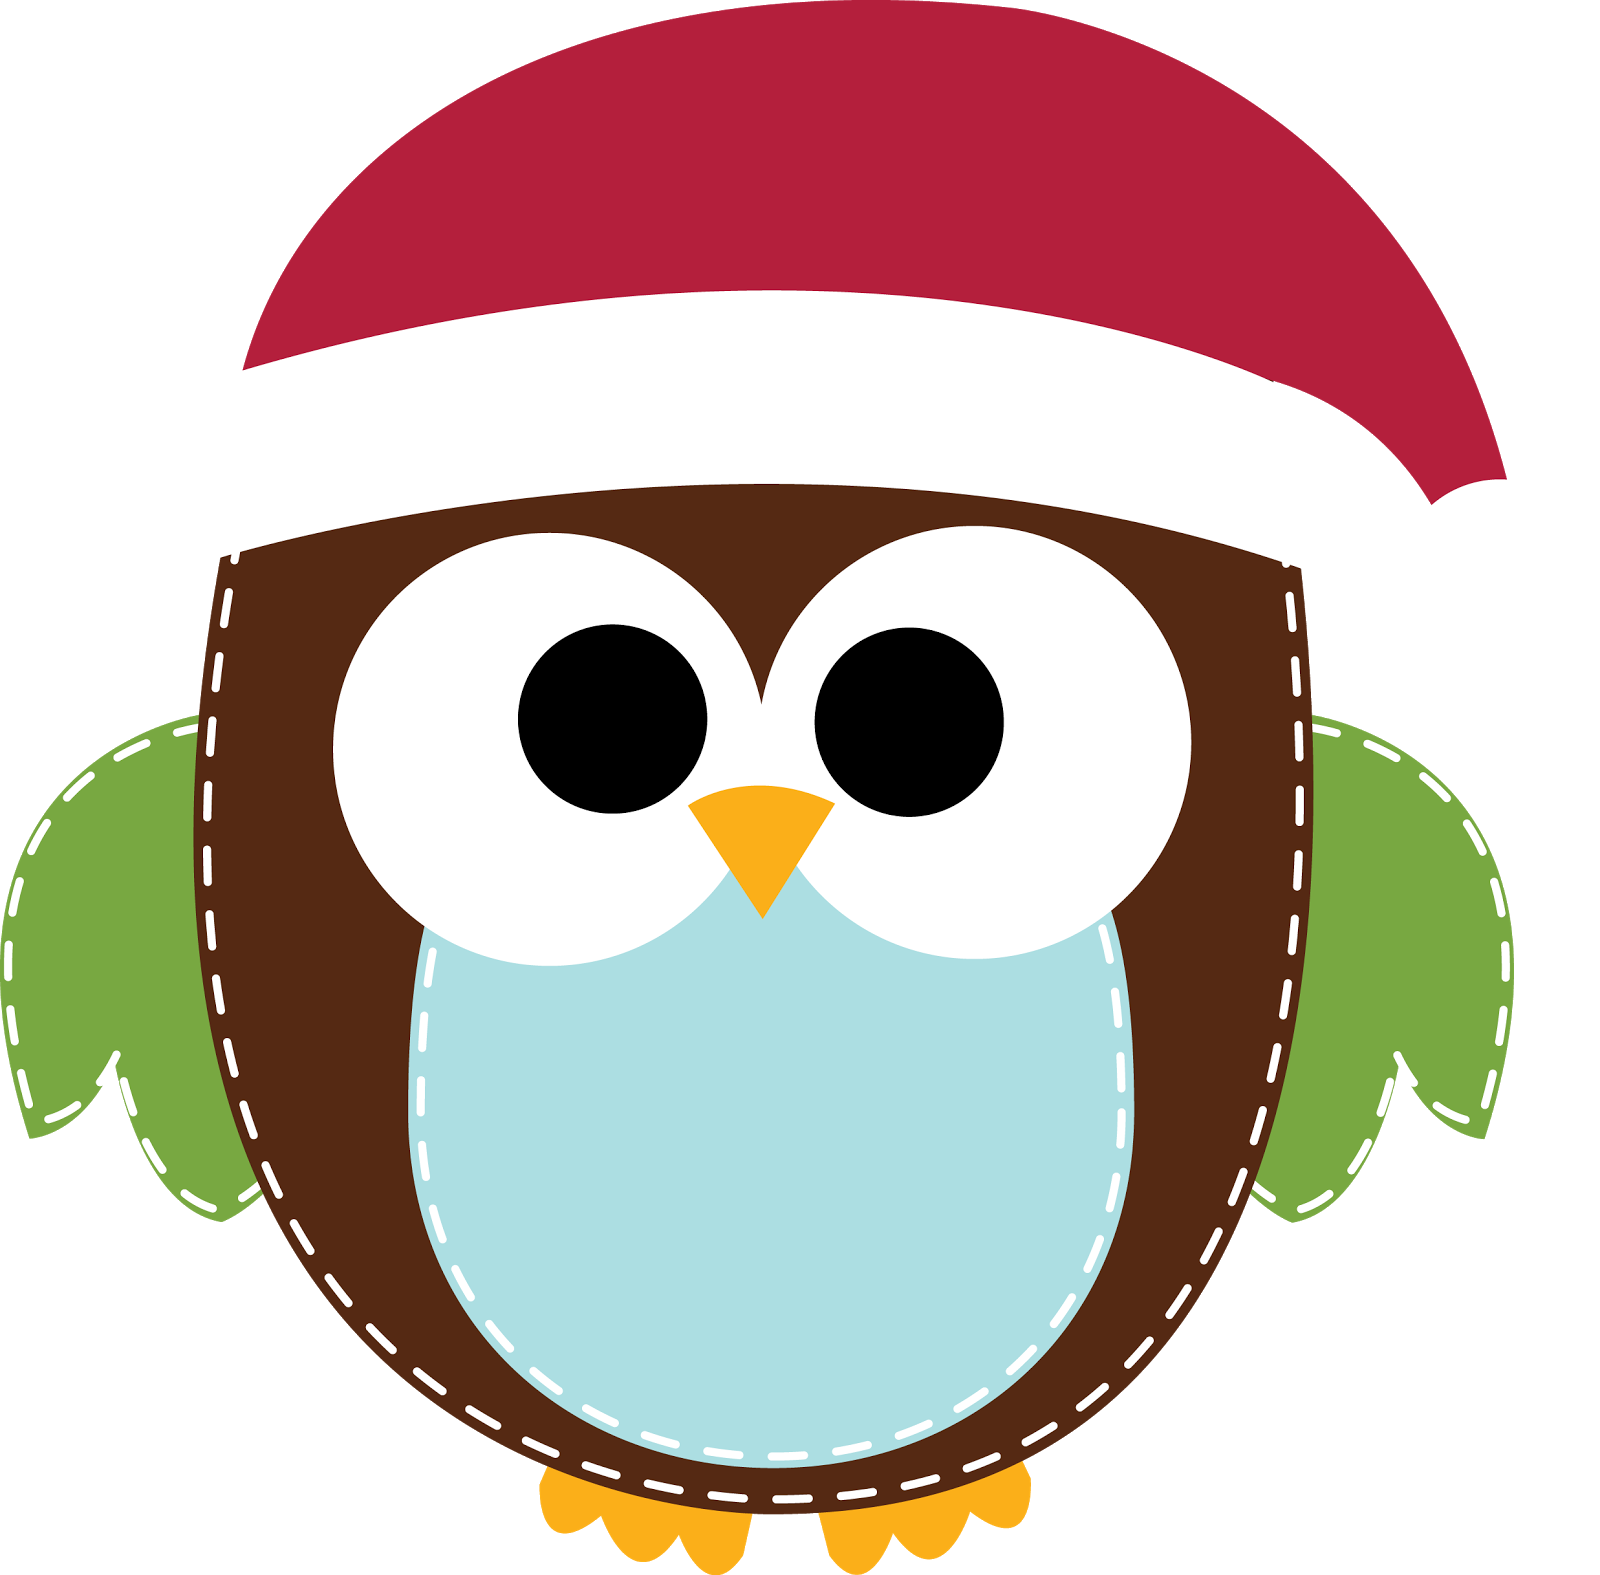 holidays clipart owl